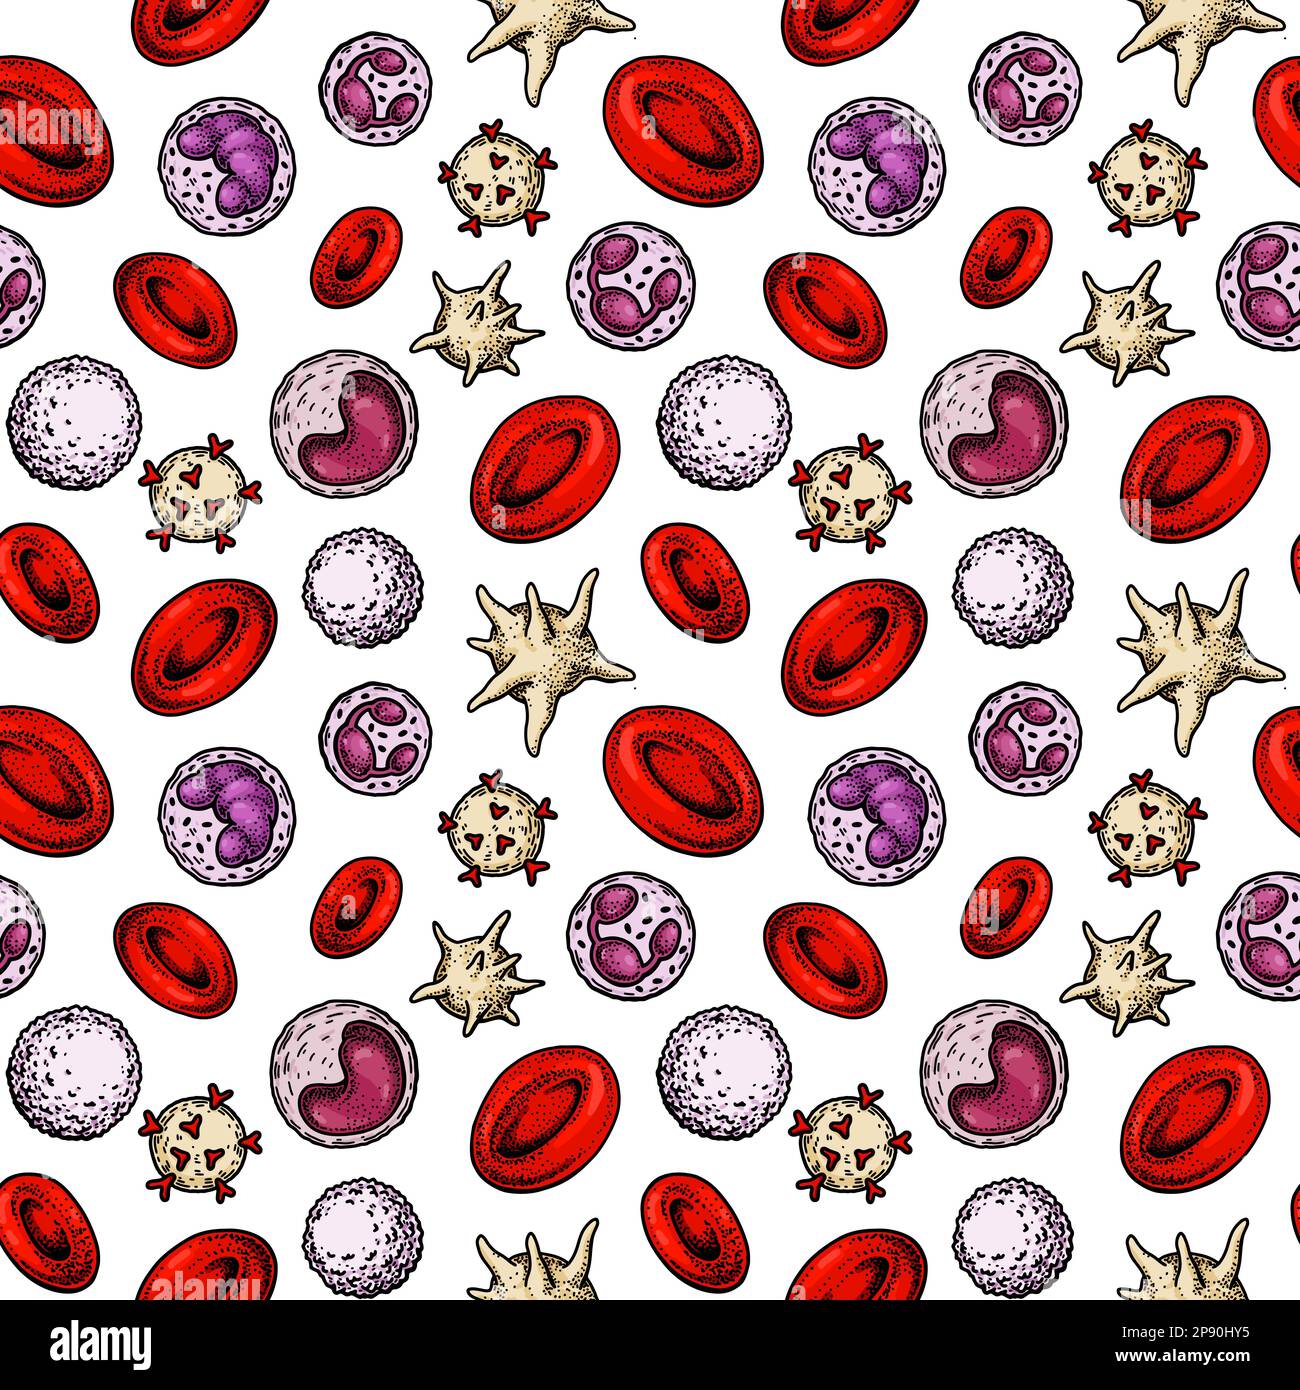 Structure homogène des cellules sanguines. Érythrocytes, leucocytes et plaquettes dessinés à la main. Illustration de la biologie scientifique dans un style d'esquisse Illustration de Vecteur